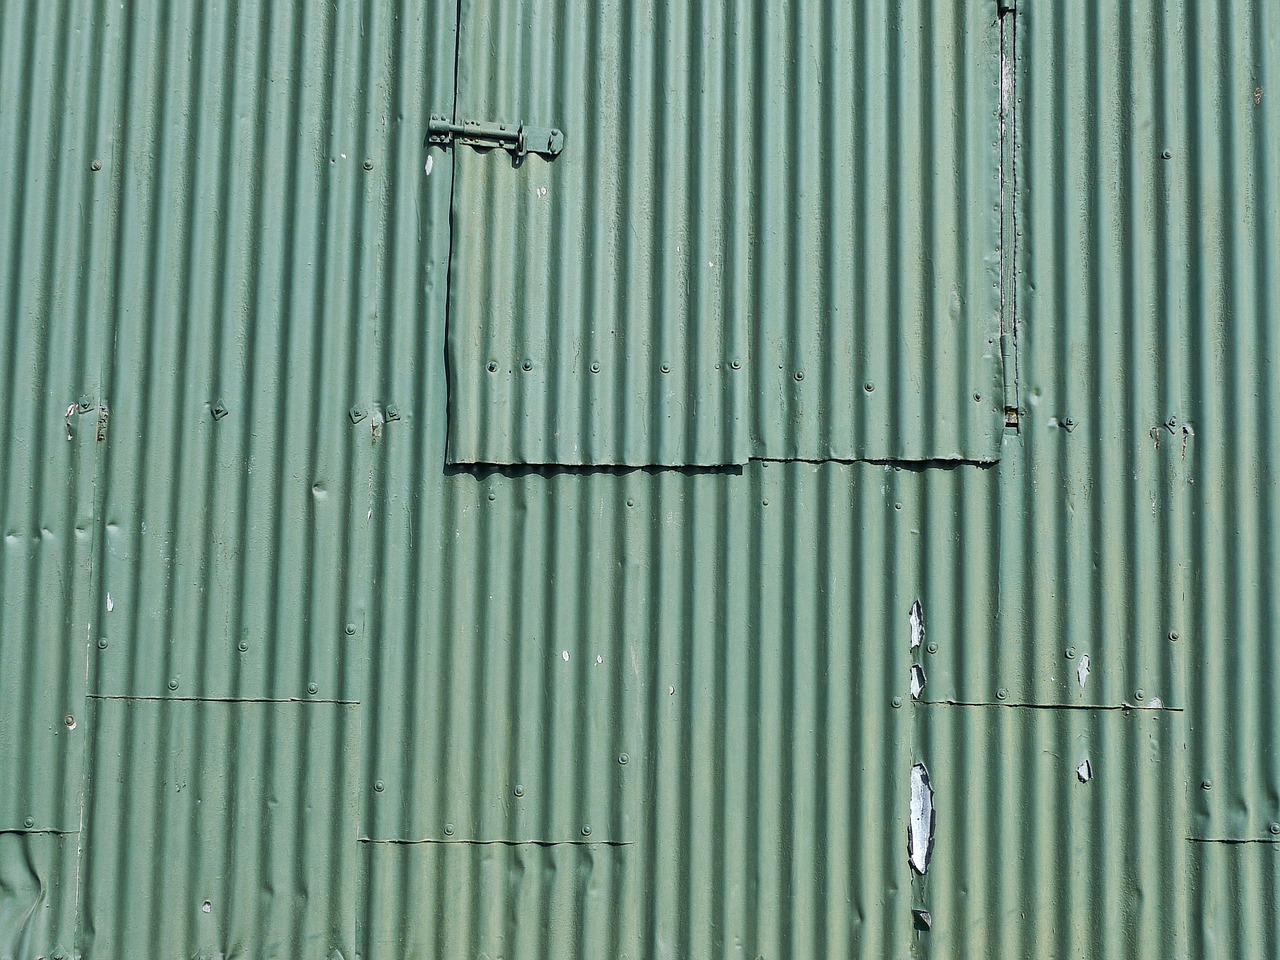 corrugated iron green pattern free photo